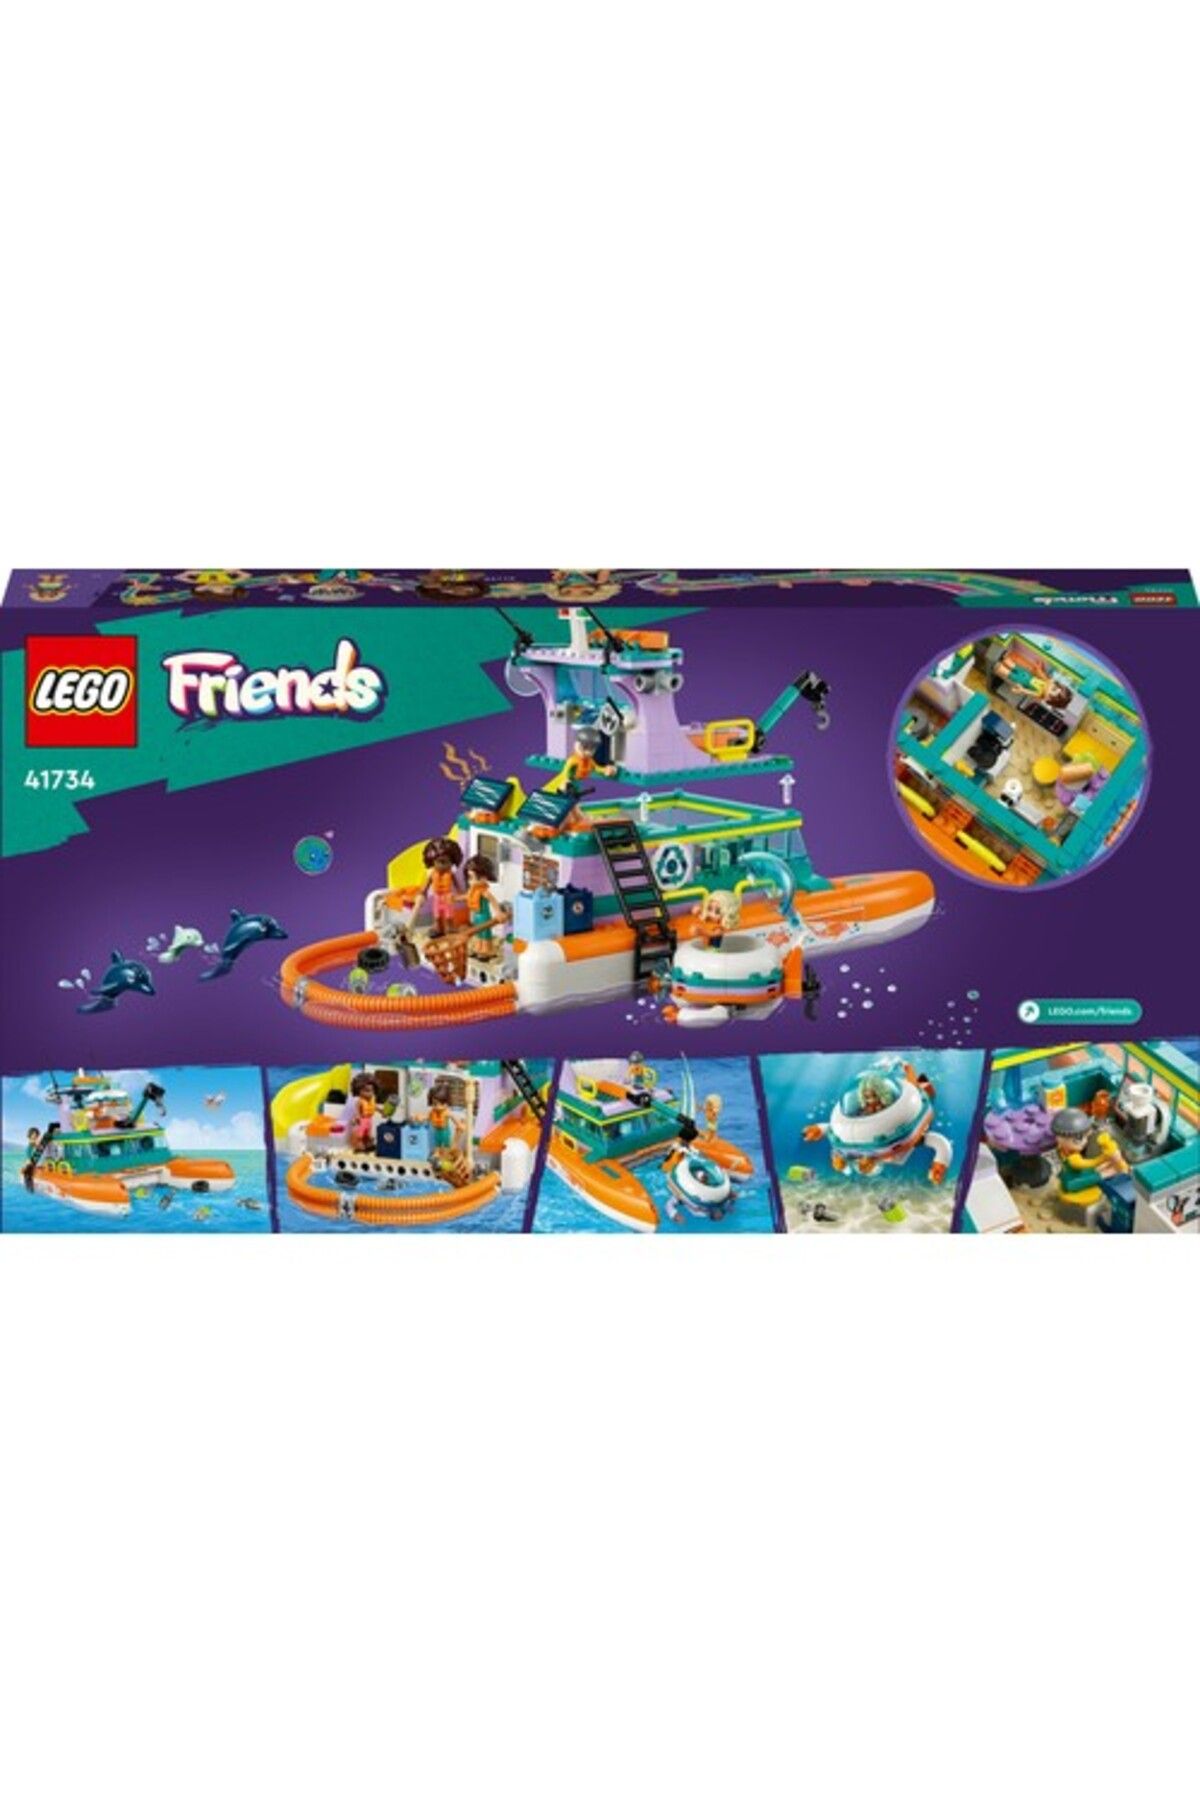 LEGO لگو مجموعه ساختمانی قایق نجات دریایی دوستان 41734 (717 قطعه)